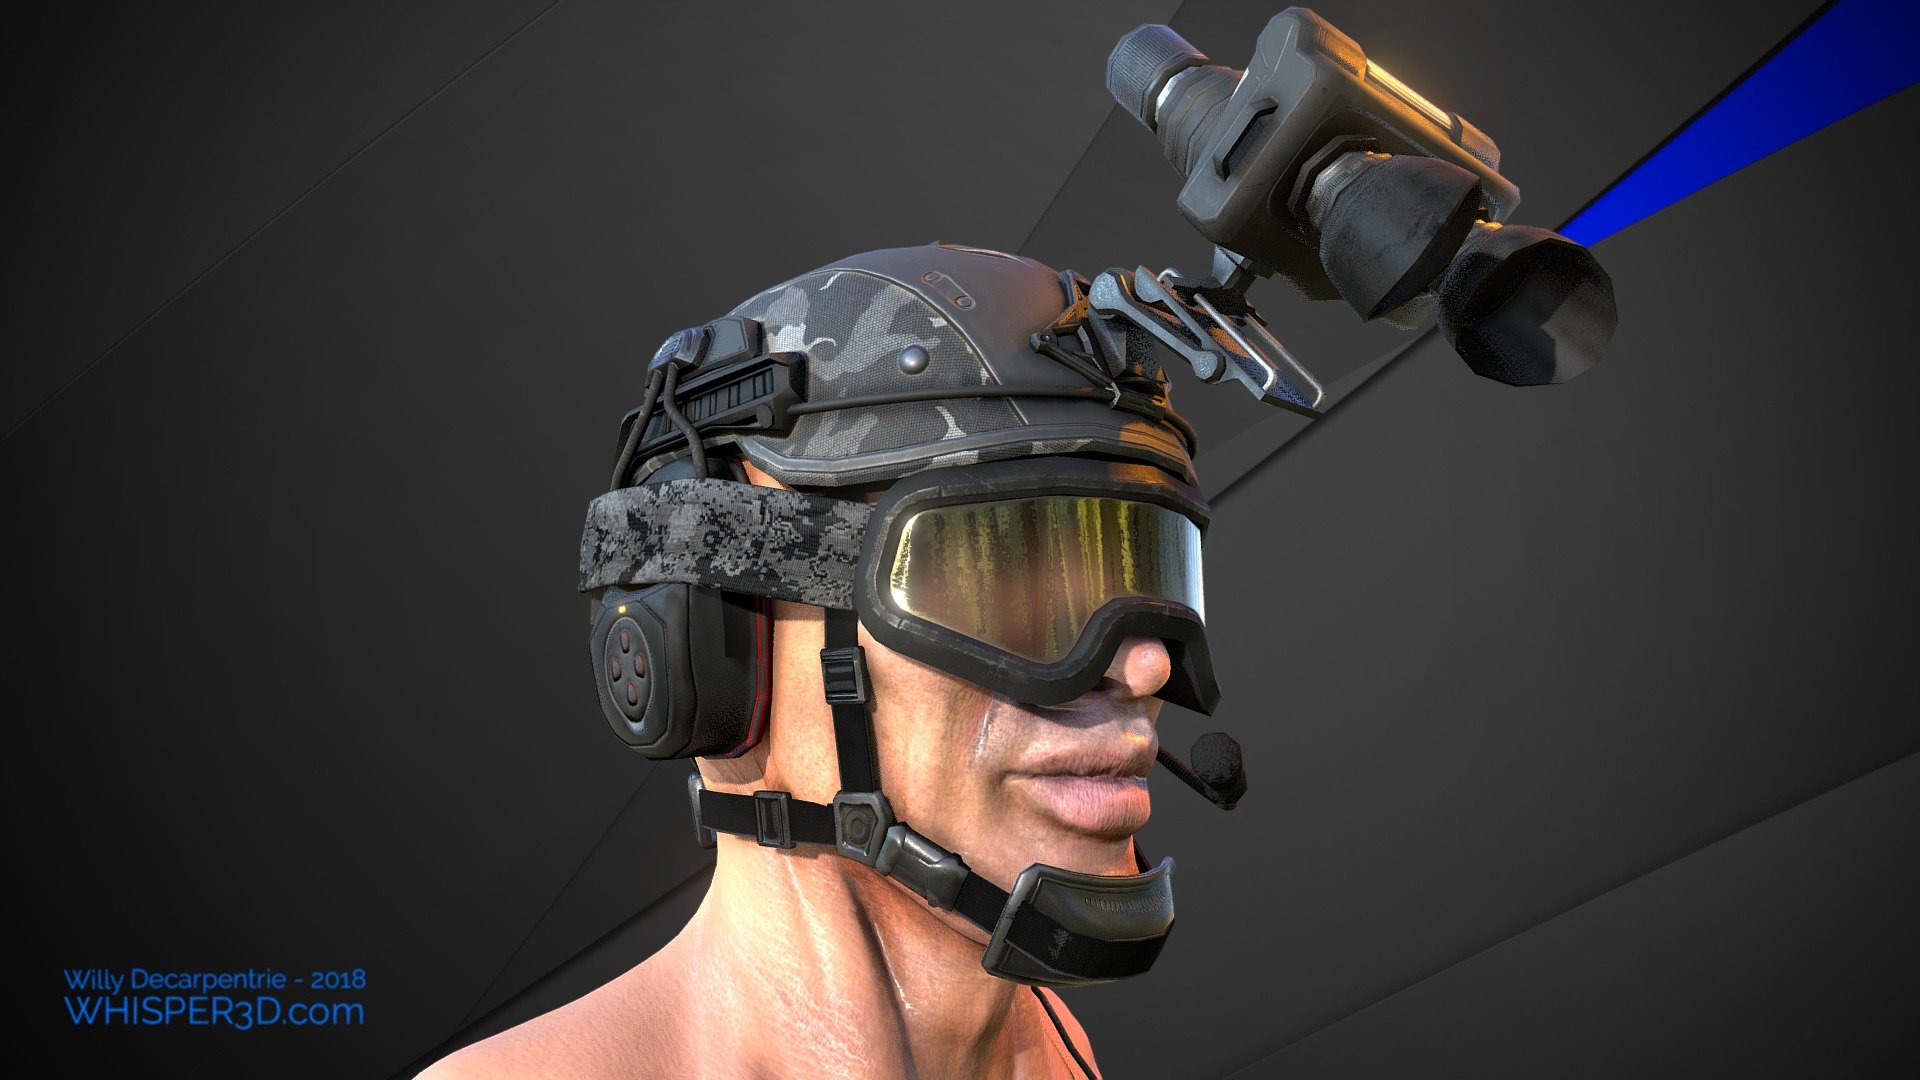 Modello 3D Maschera antigas 3D casco militare da combattimento soldato  armatura scifi fantasy - TurboSquid 2057827